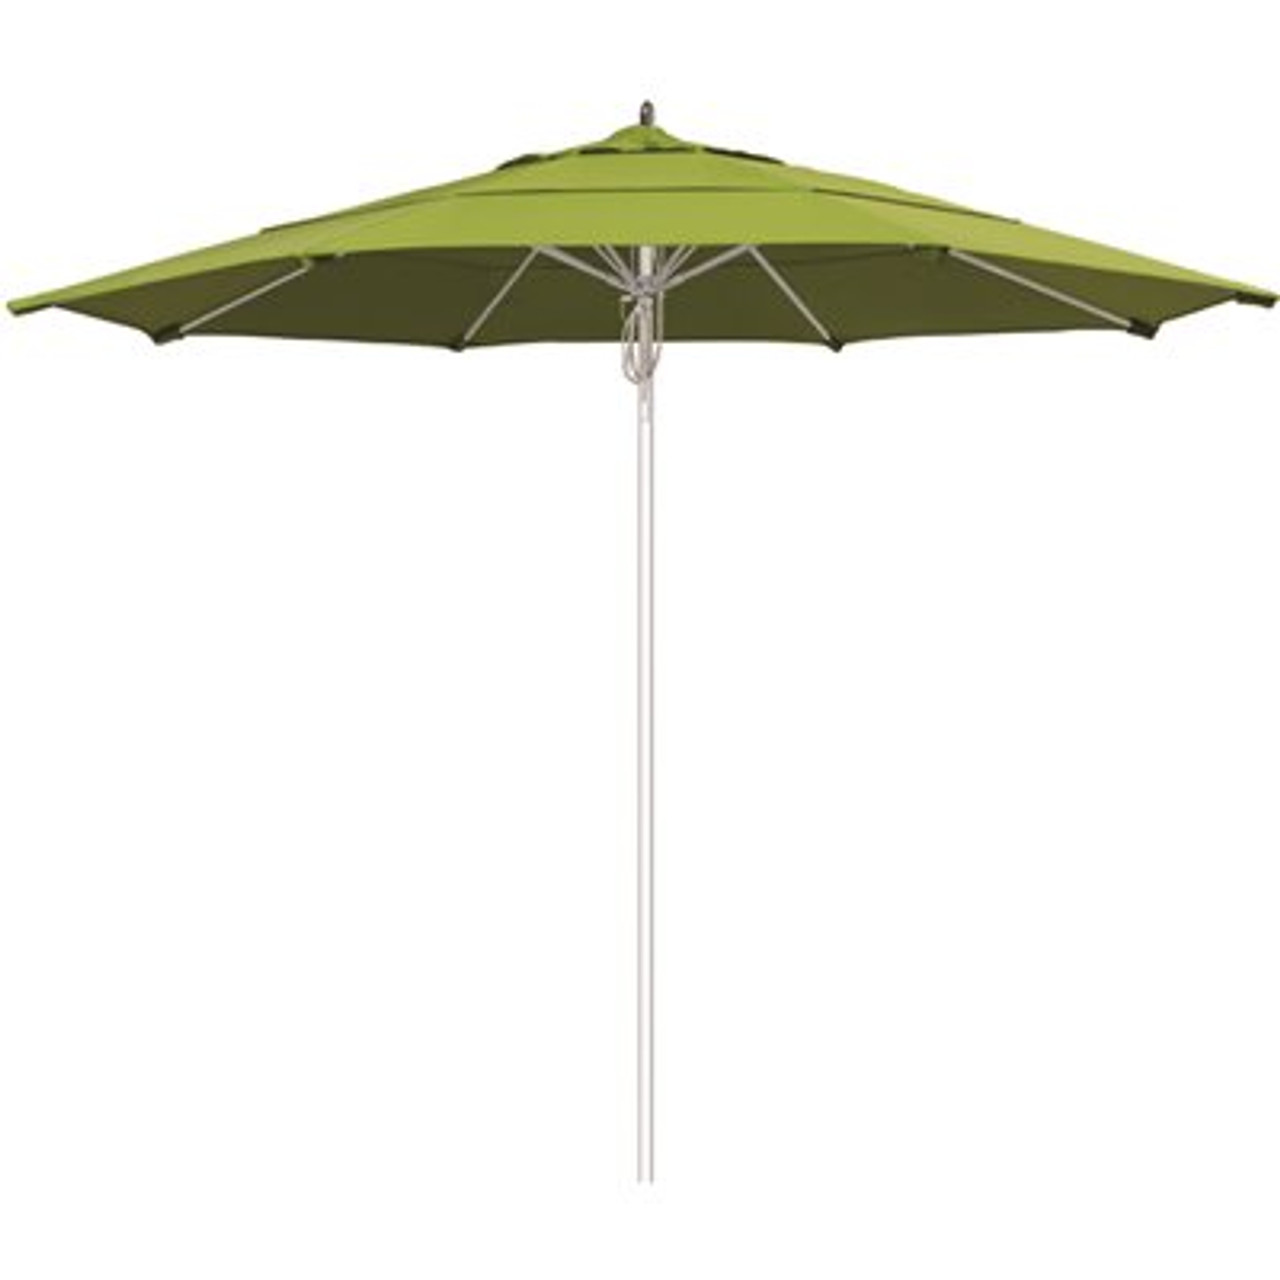 11 ft. Silver Aluminum Commercial Market Patio Umbrella Fiberglass Ribs and Pulley lift in Macaw Sunbrella